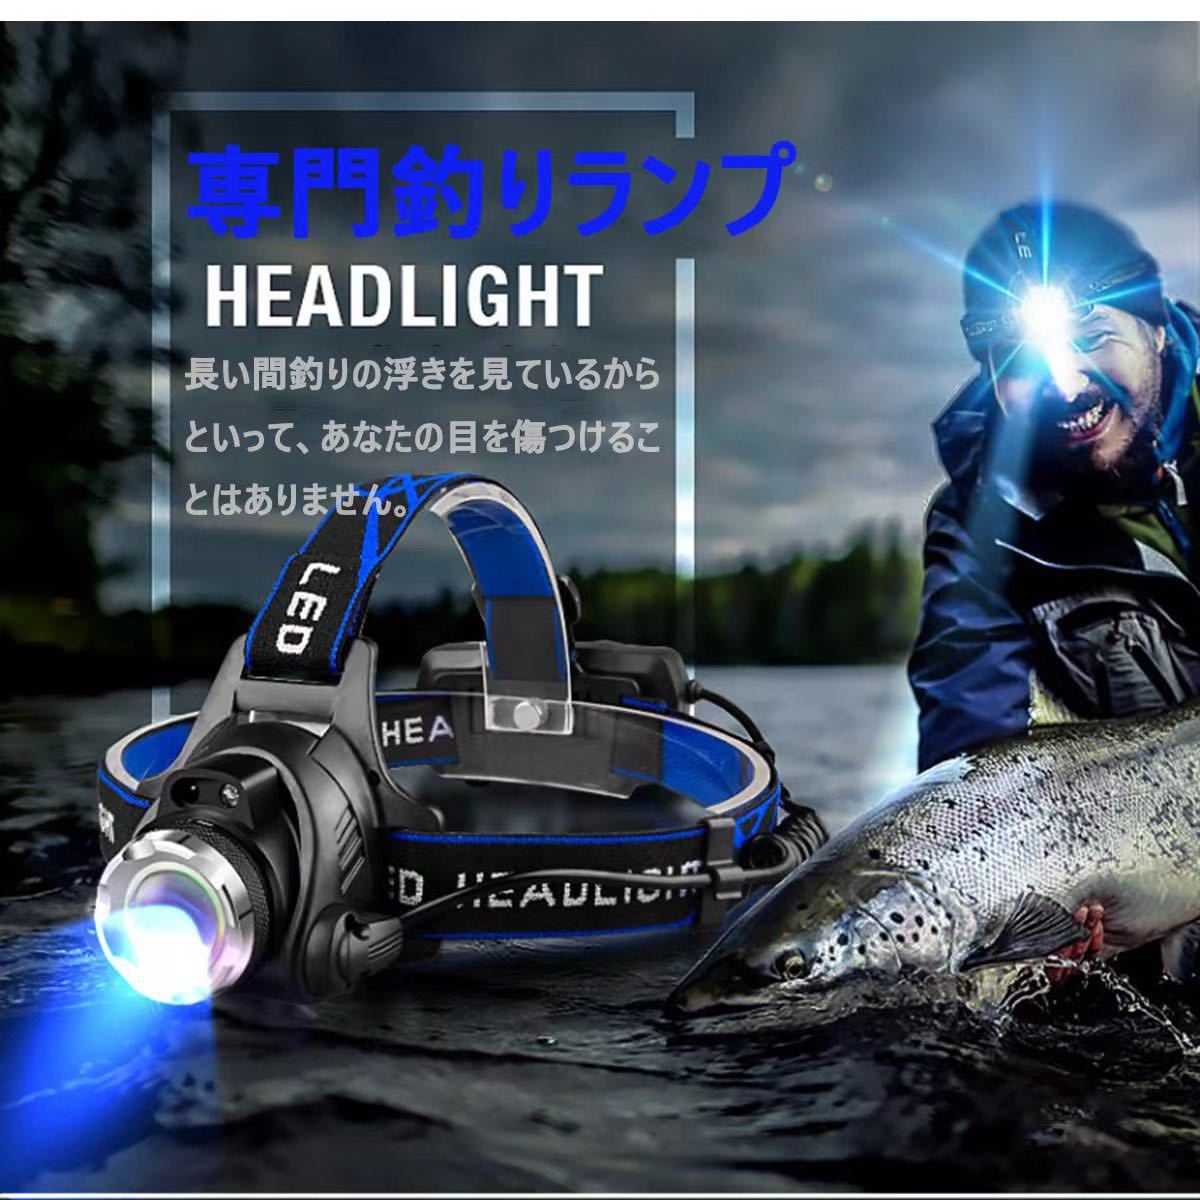 LEDヘッドライト センサー USB充電式 4モード 高輝度 明るい 作業用ライト 防水 作業 キャンプ 散歩 登山 釣り 